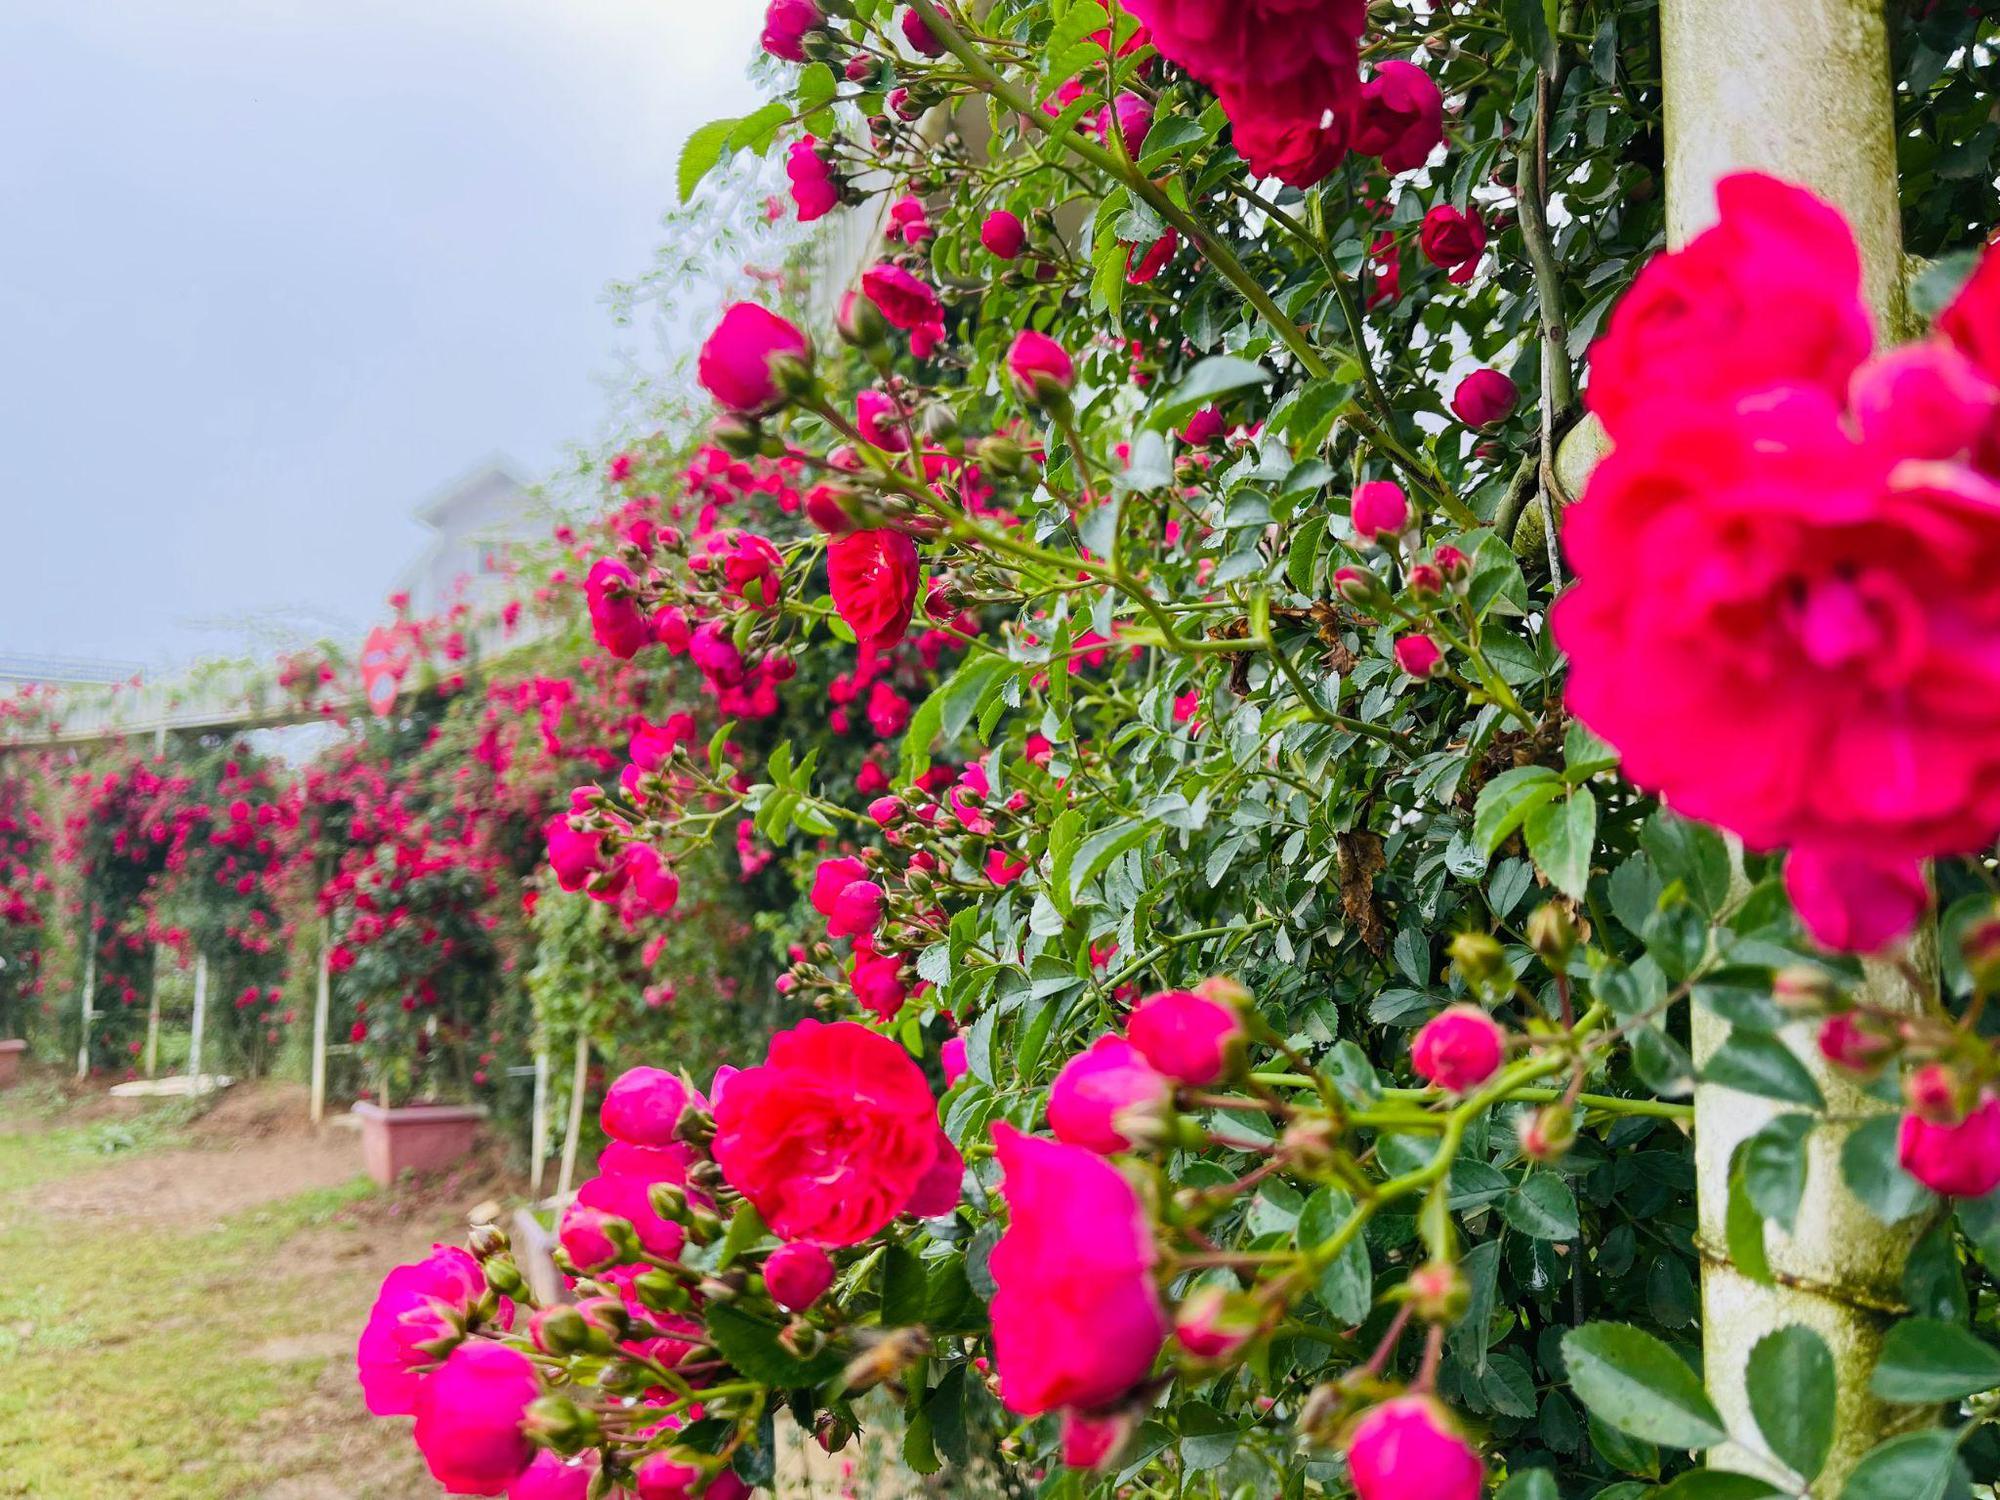 Hồng leo đỏ rực thung lũng hoa hồng Fansipan mùa tháng 5 - Ảnh 2.